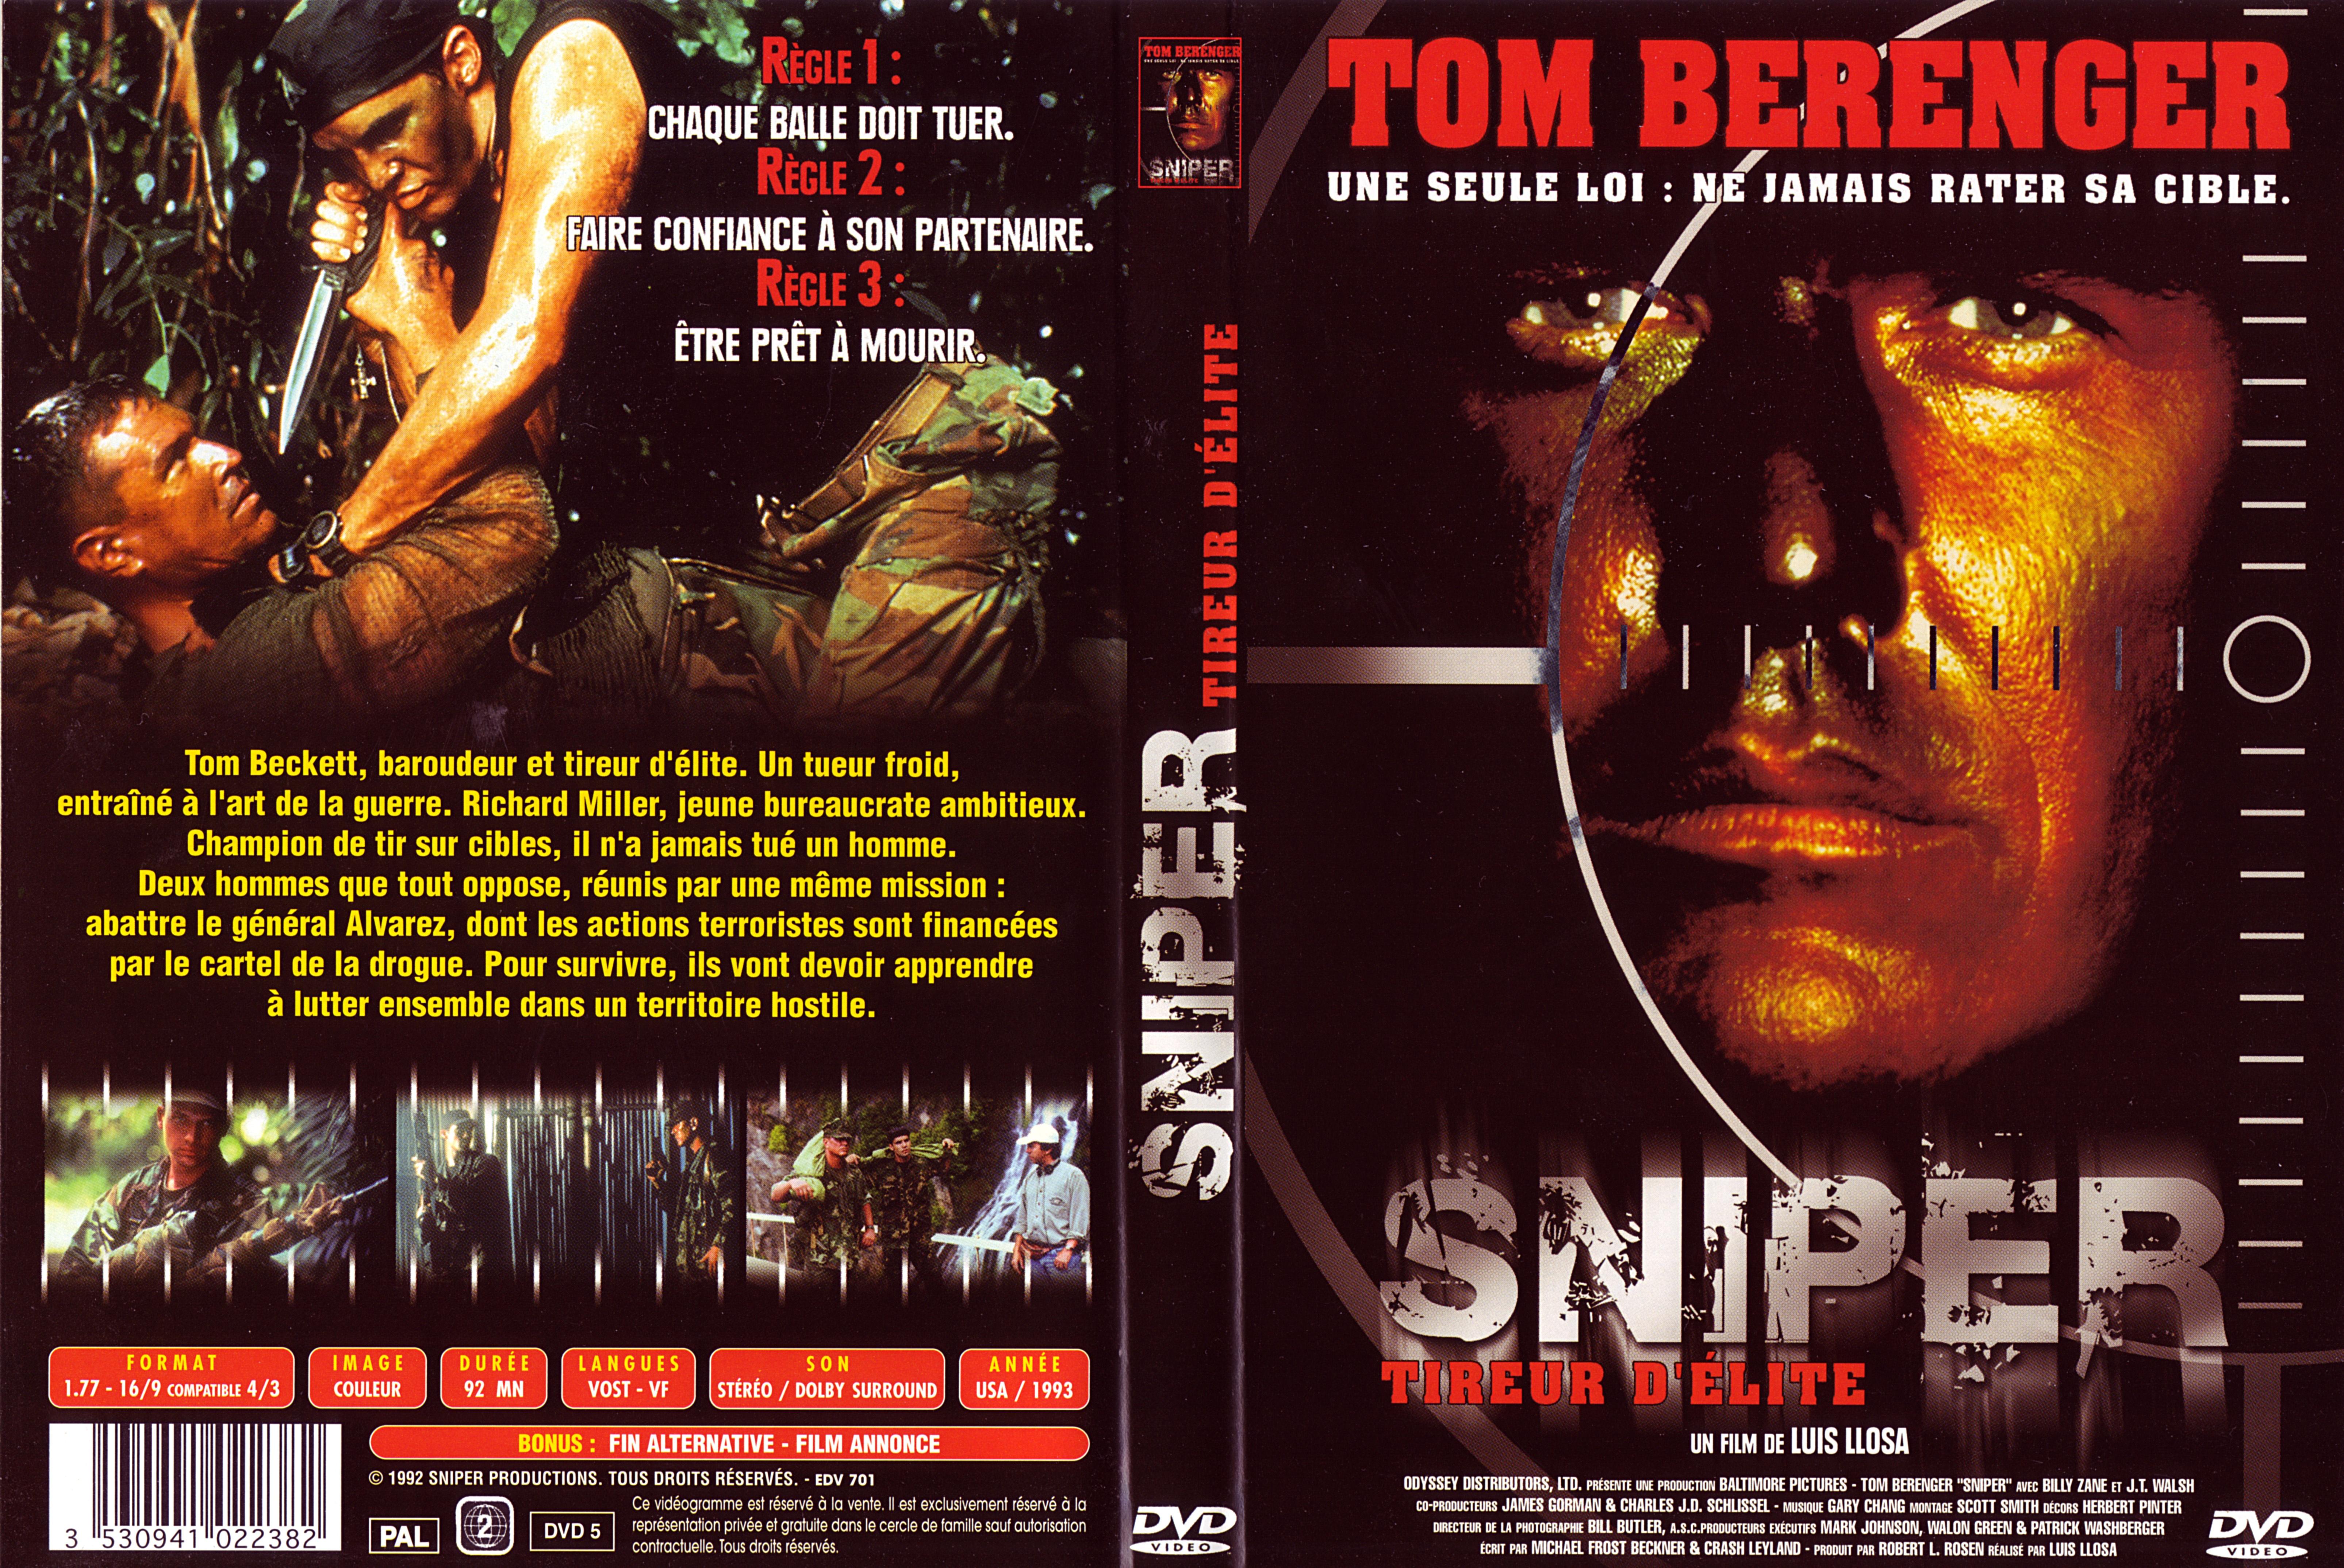 Jaquette DVD Sniper v4